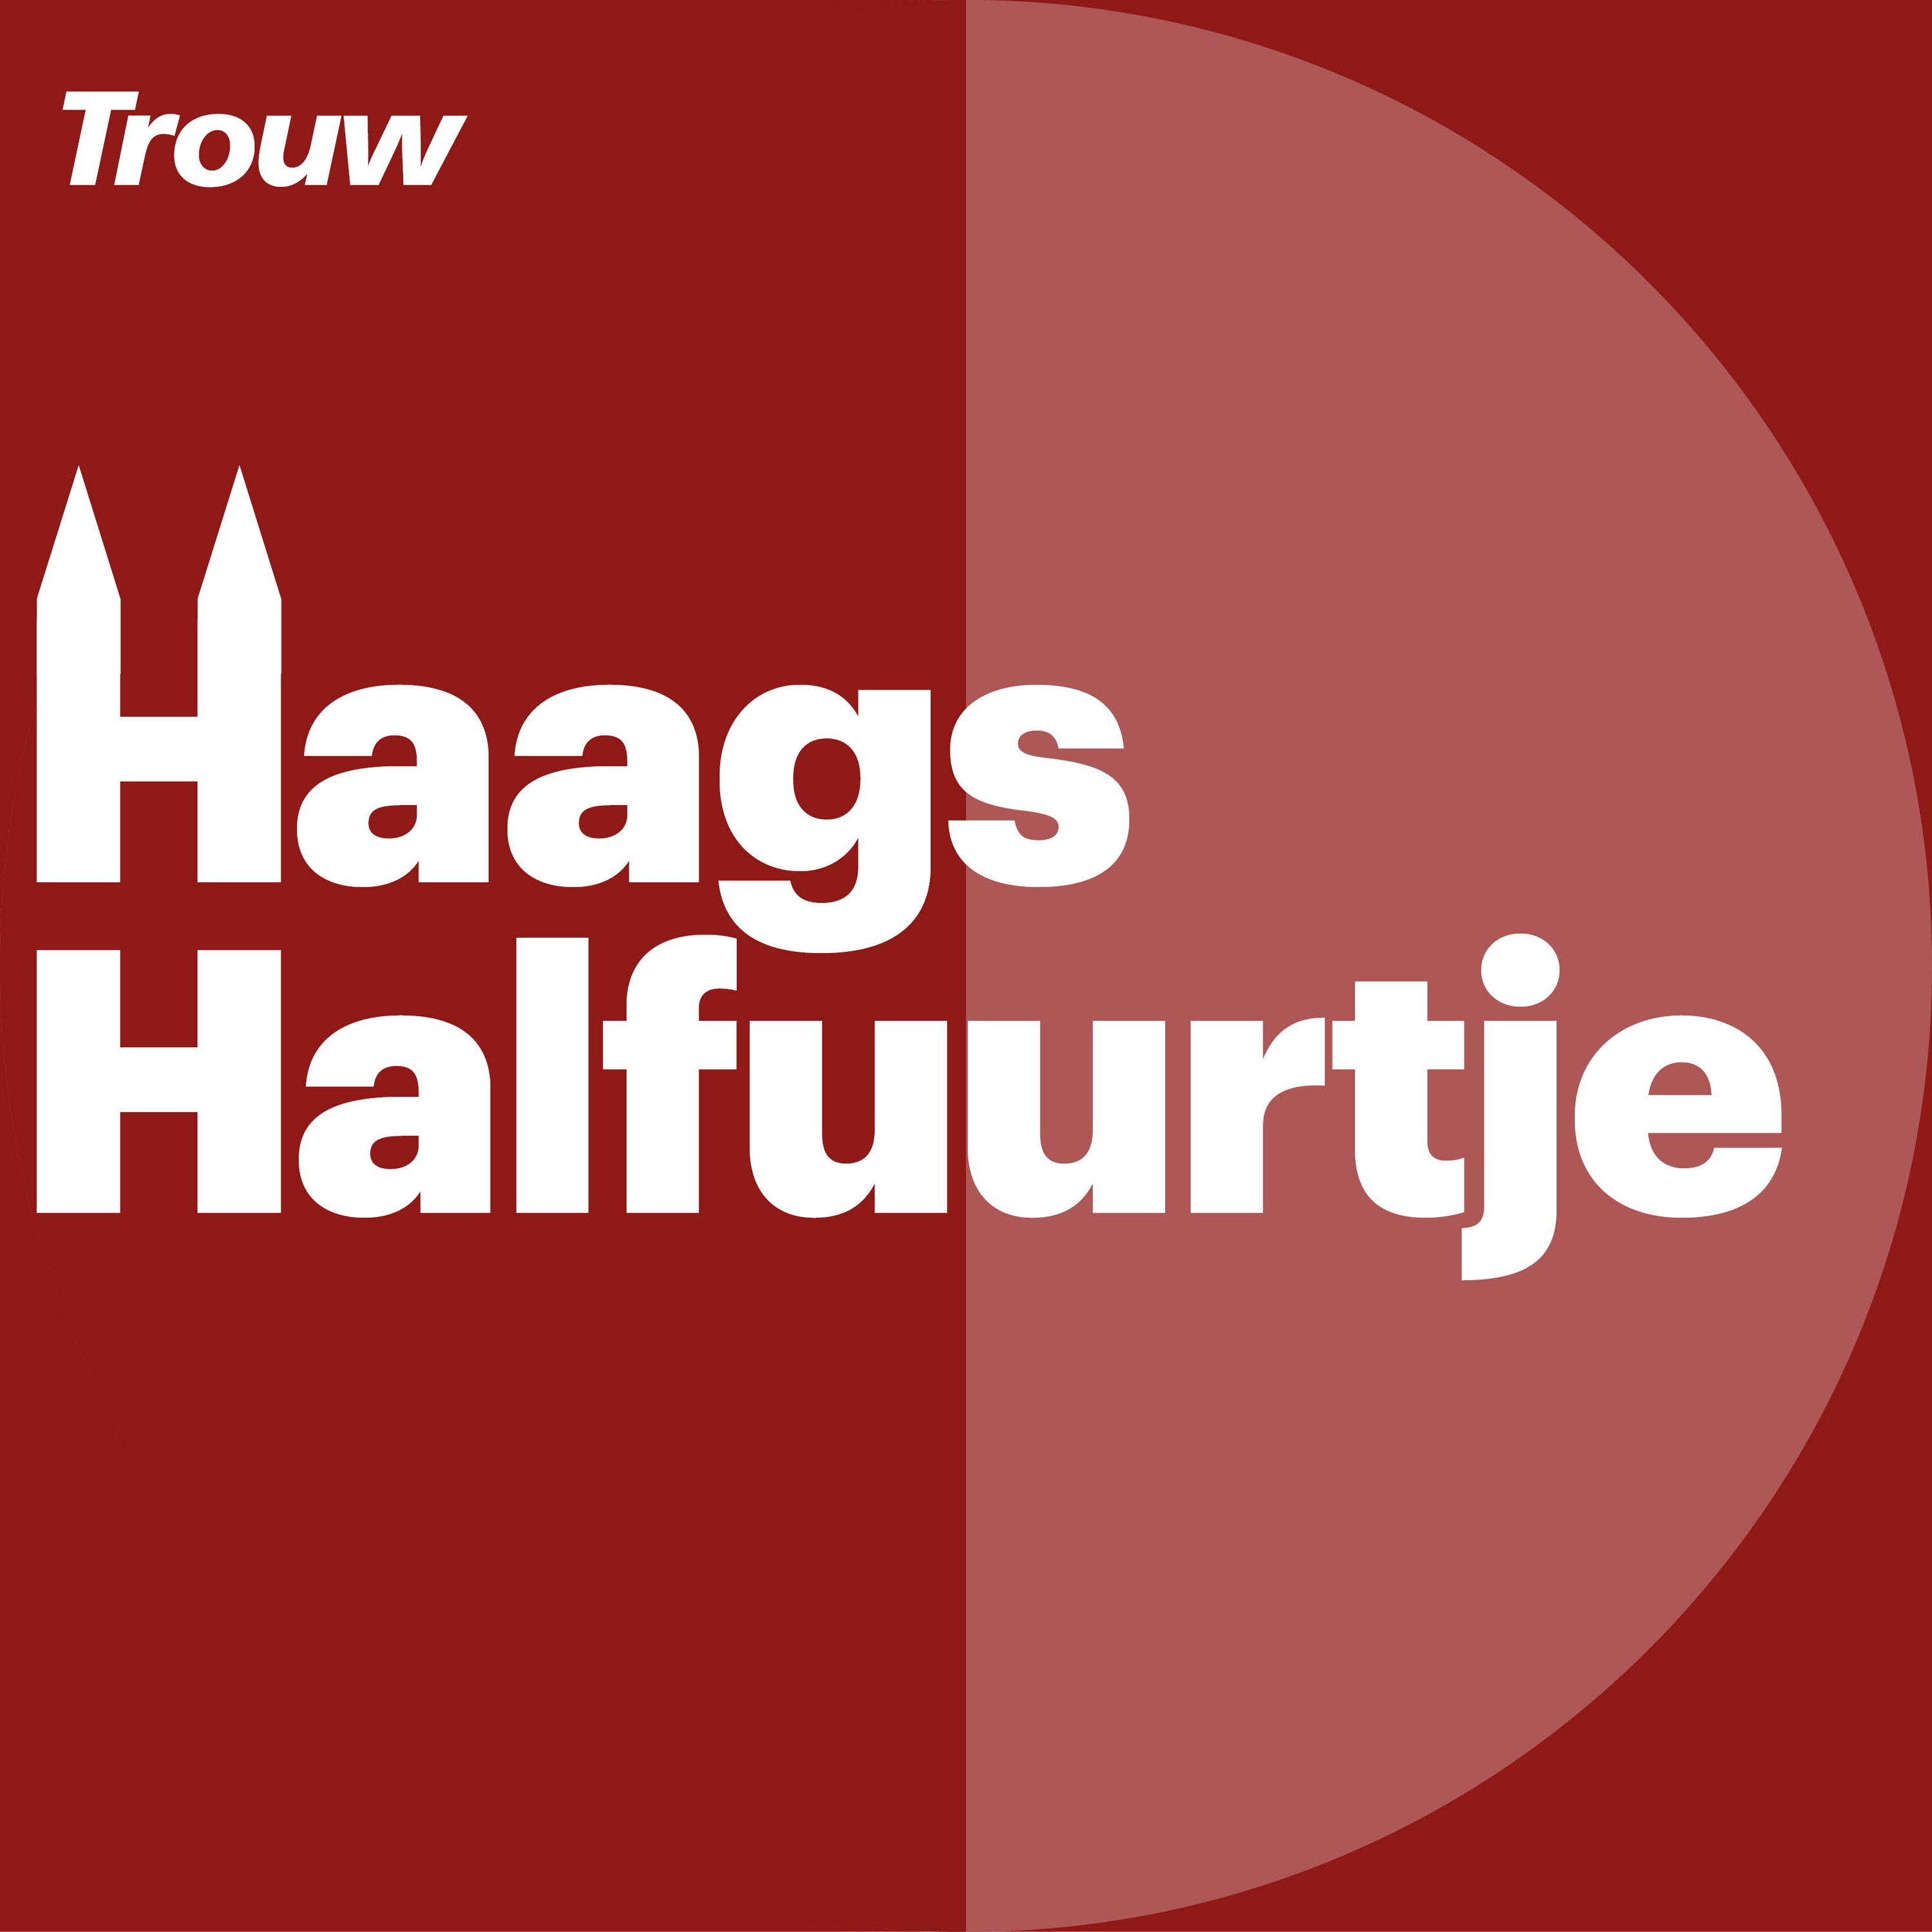 Hoe beeldvorming Den Haag blind maakte voor mens en recht